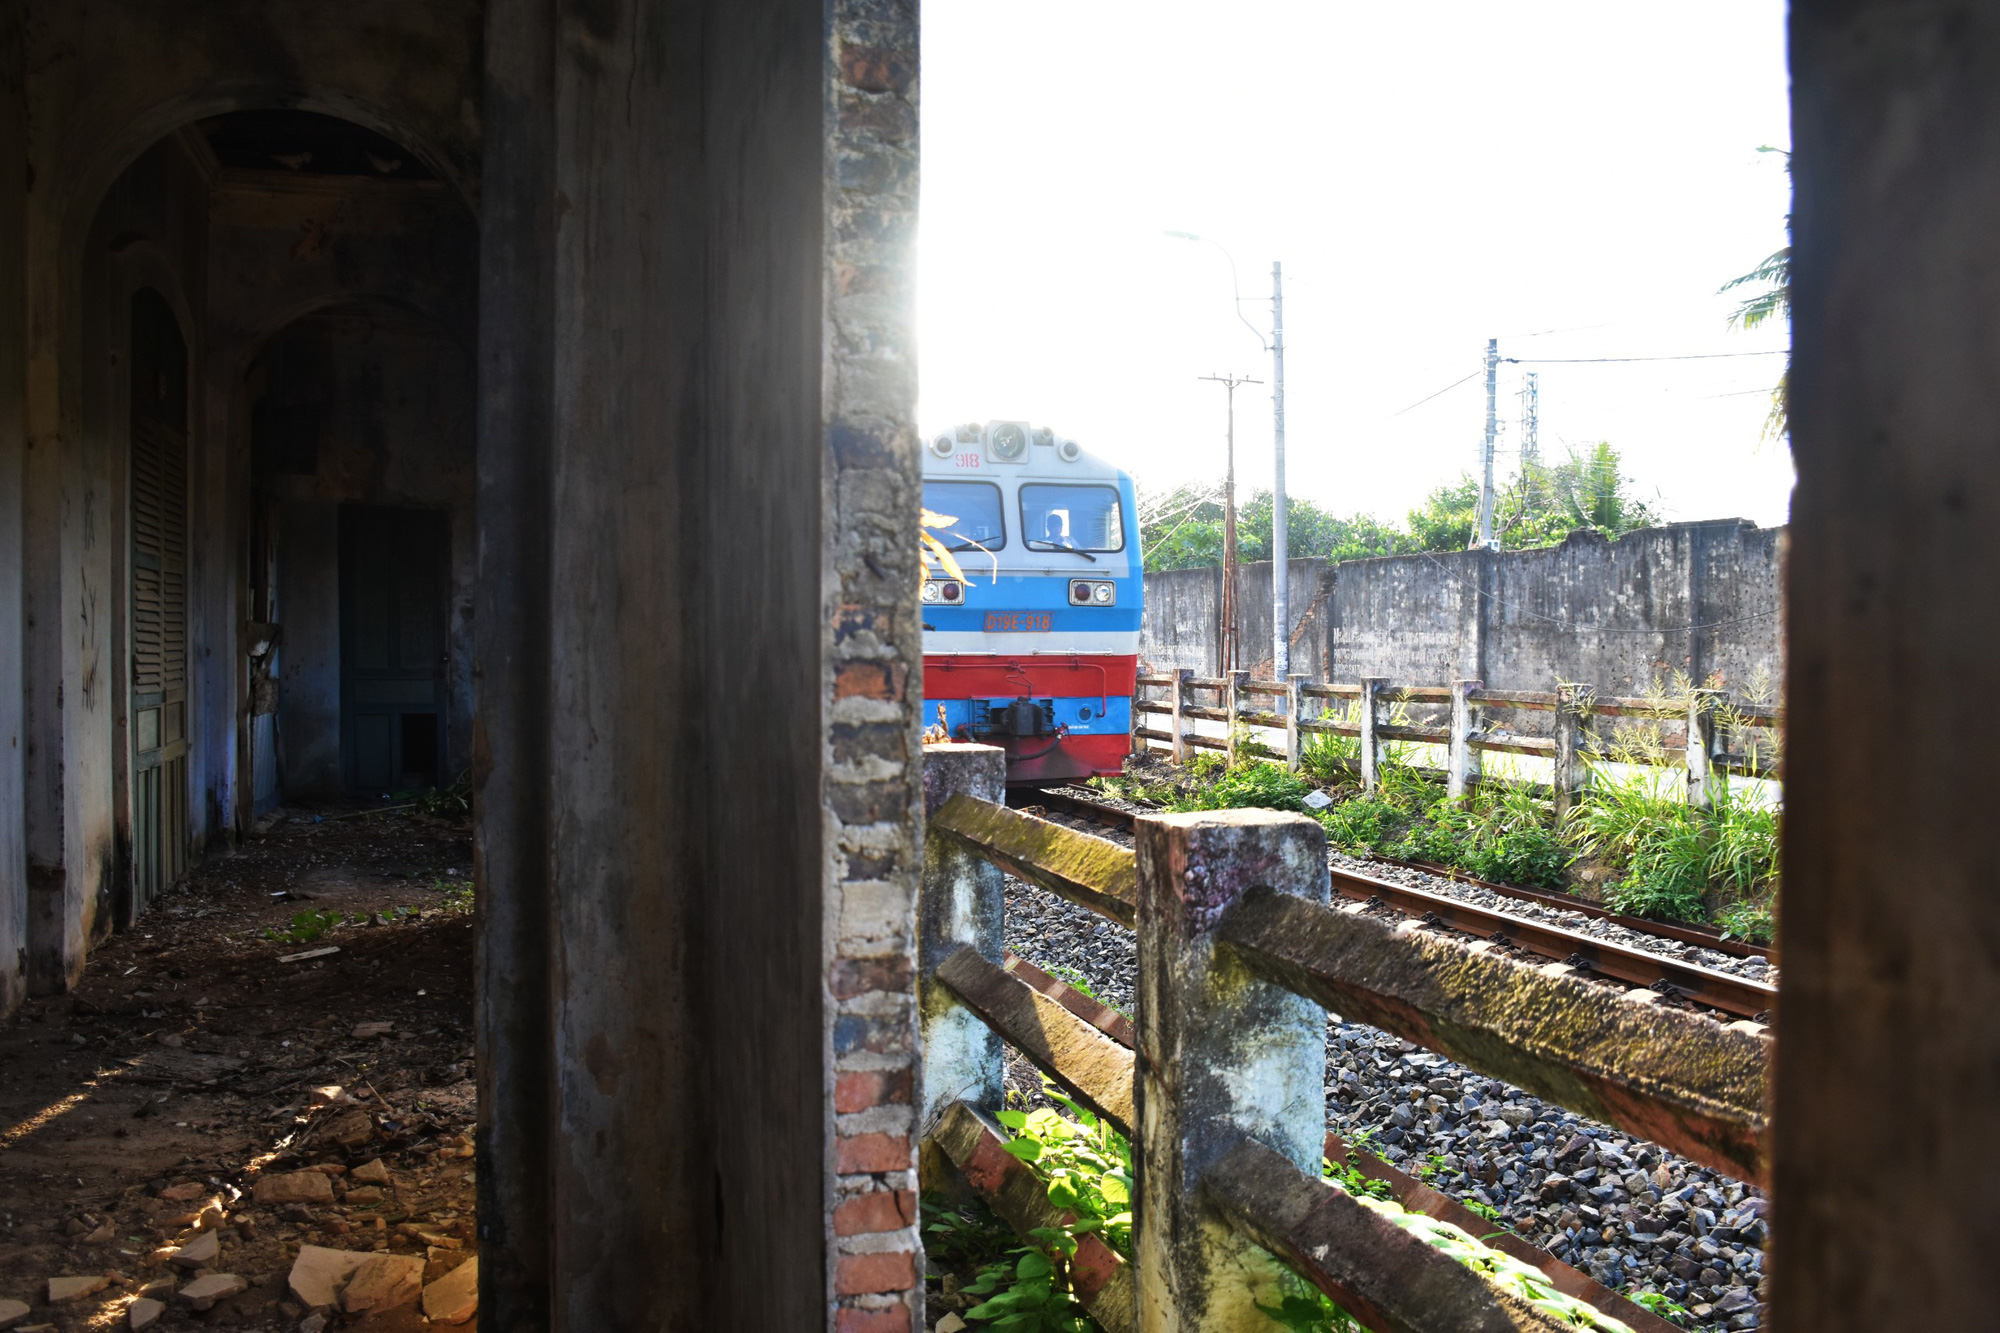 Hằng ngày vẫn có những chuyến tàu chạy ngang qua nhà ga như nhắc về một ký ức đã xa